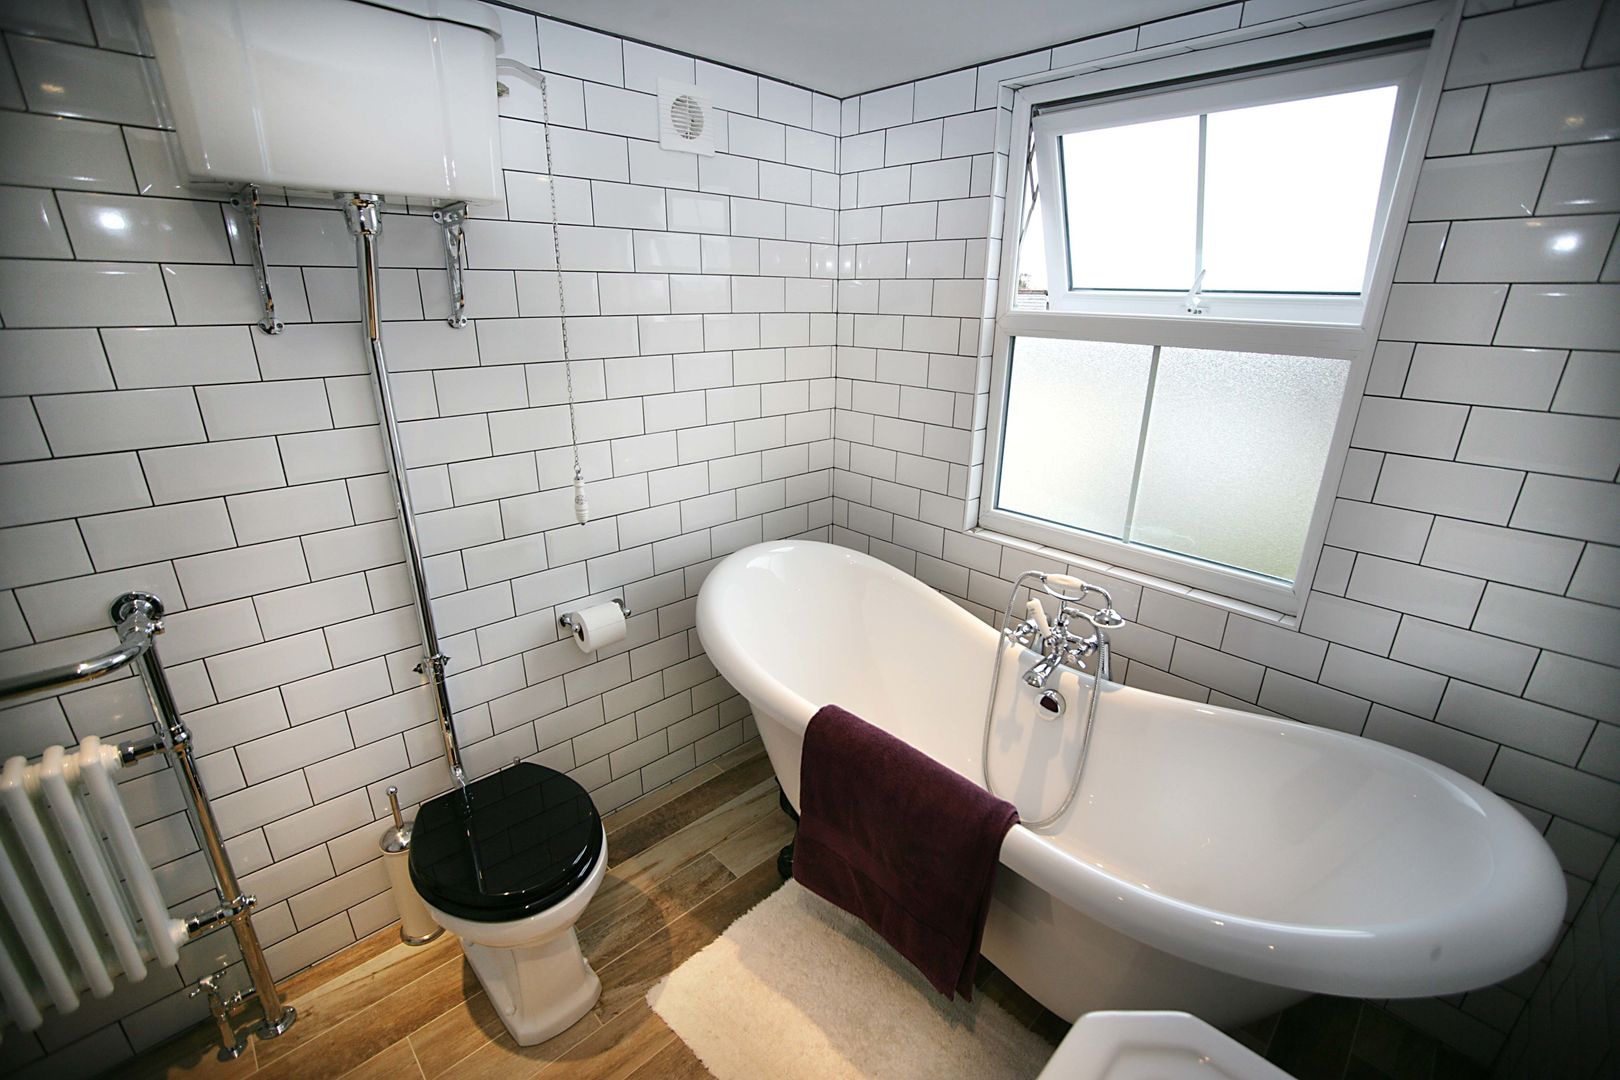 Ensuite Loft Bathroom A1 Lofts and Extensions Baños industriales Bañeras y duchas